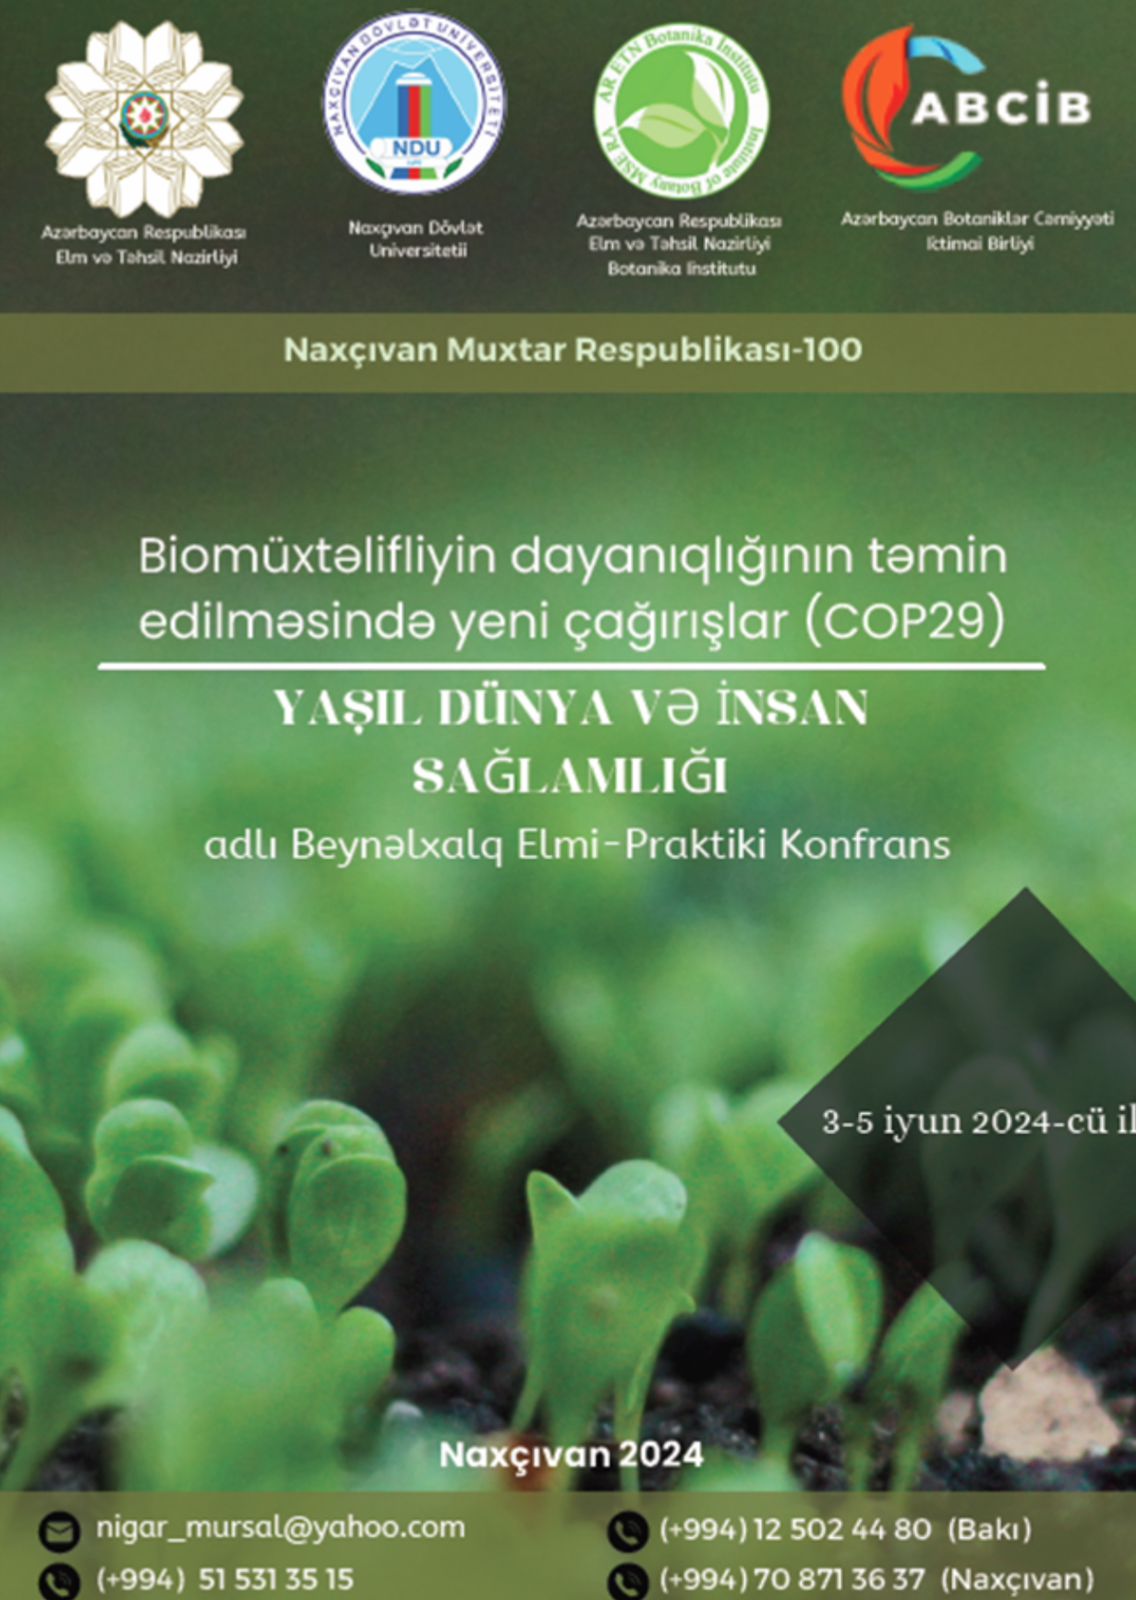 “Biomüxtəlifliyin dayanıqlığının təmin edilməsində yeni çağırışlar (COP29) yaşıl dünya və insan sağlamlığı” mövzusunda konfrans keçiriləcək